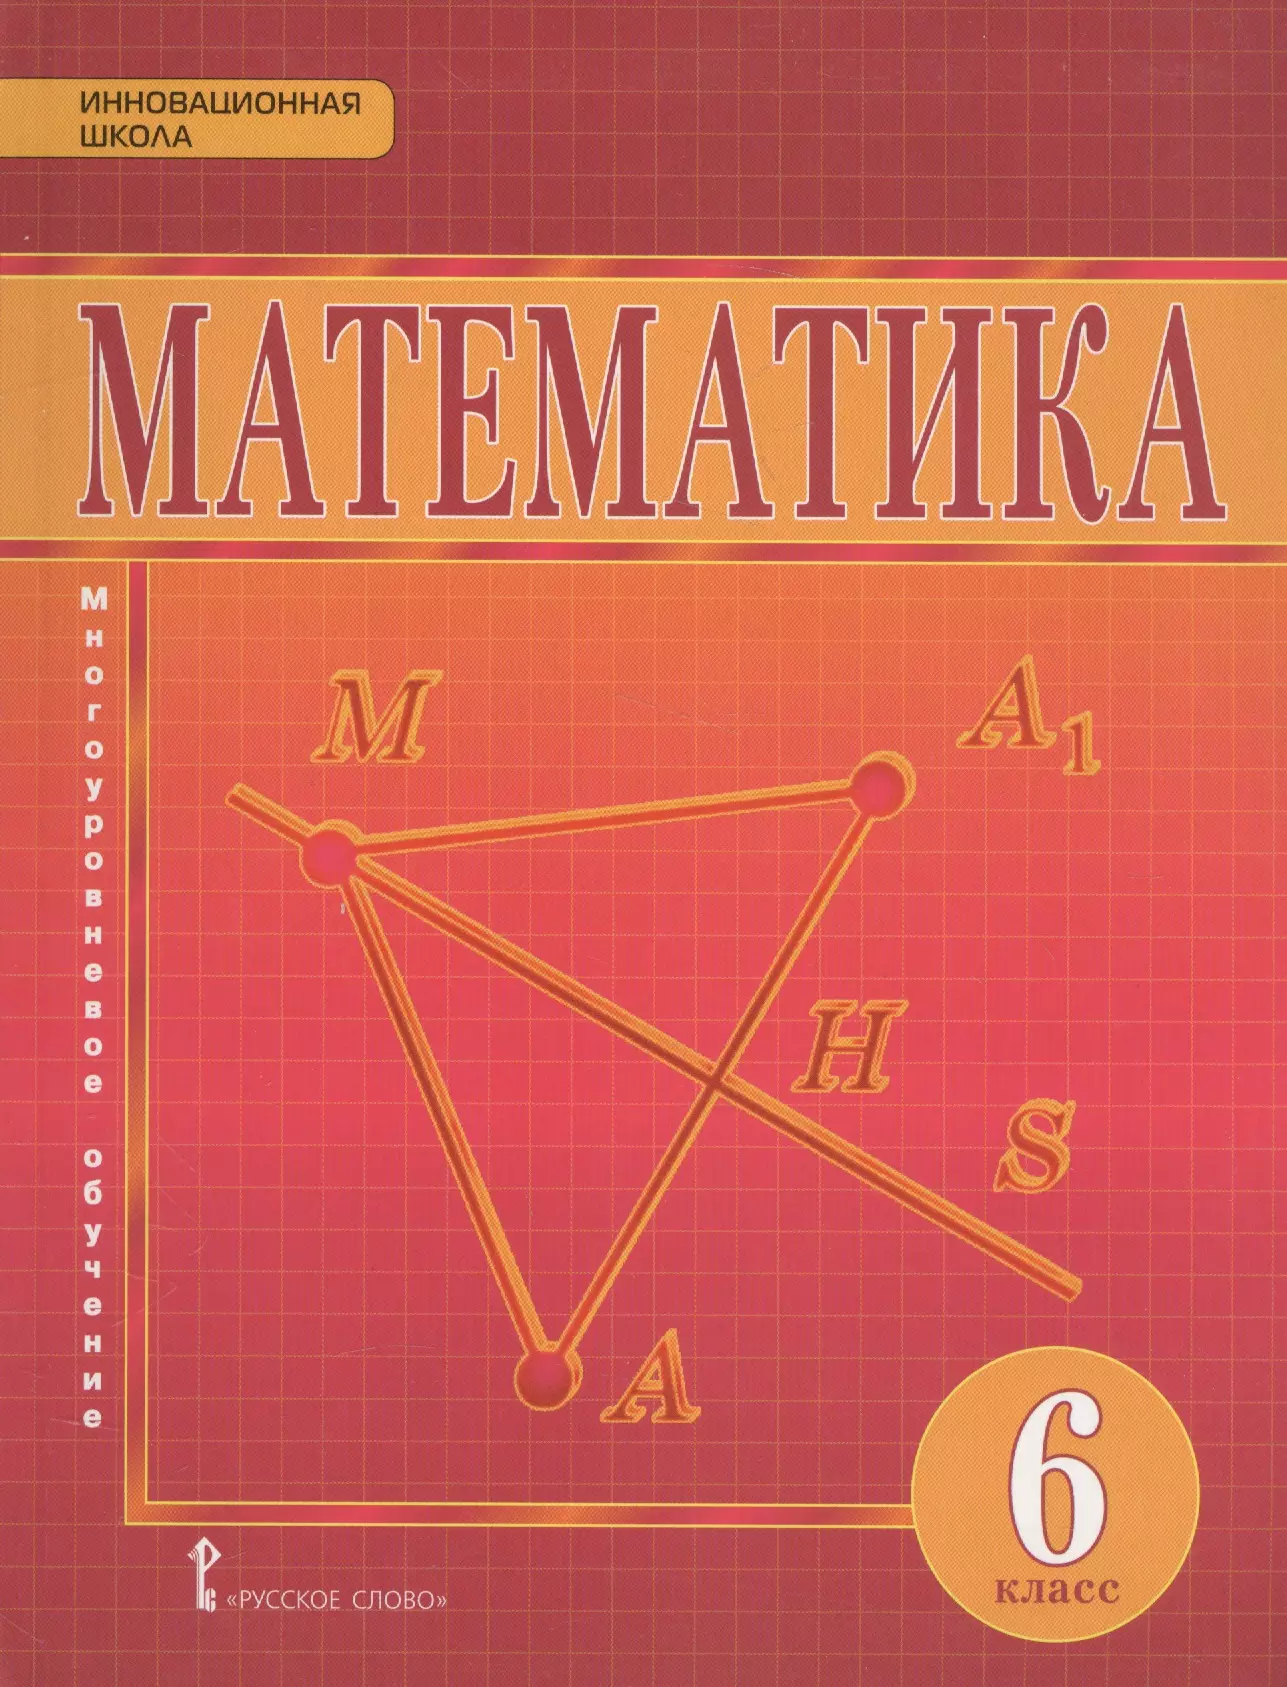 Математика 6 класс учебник фото страниц